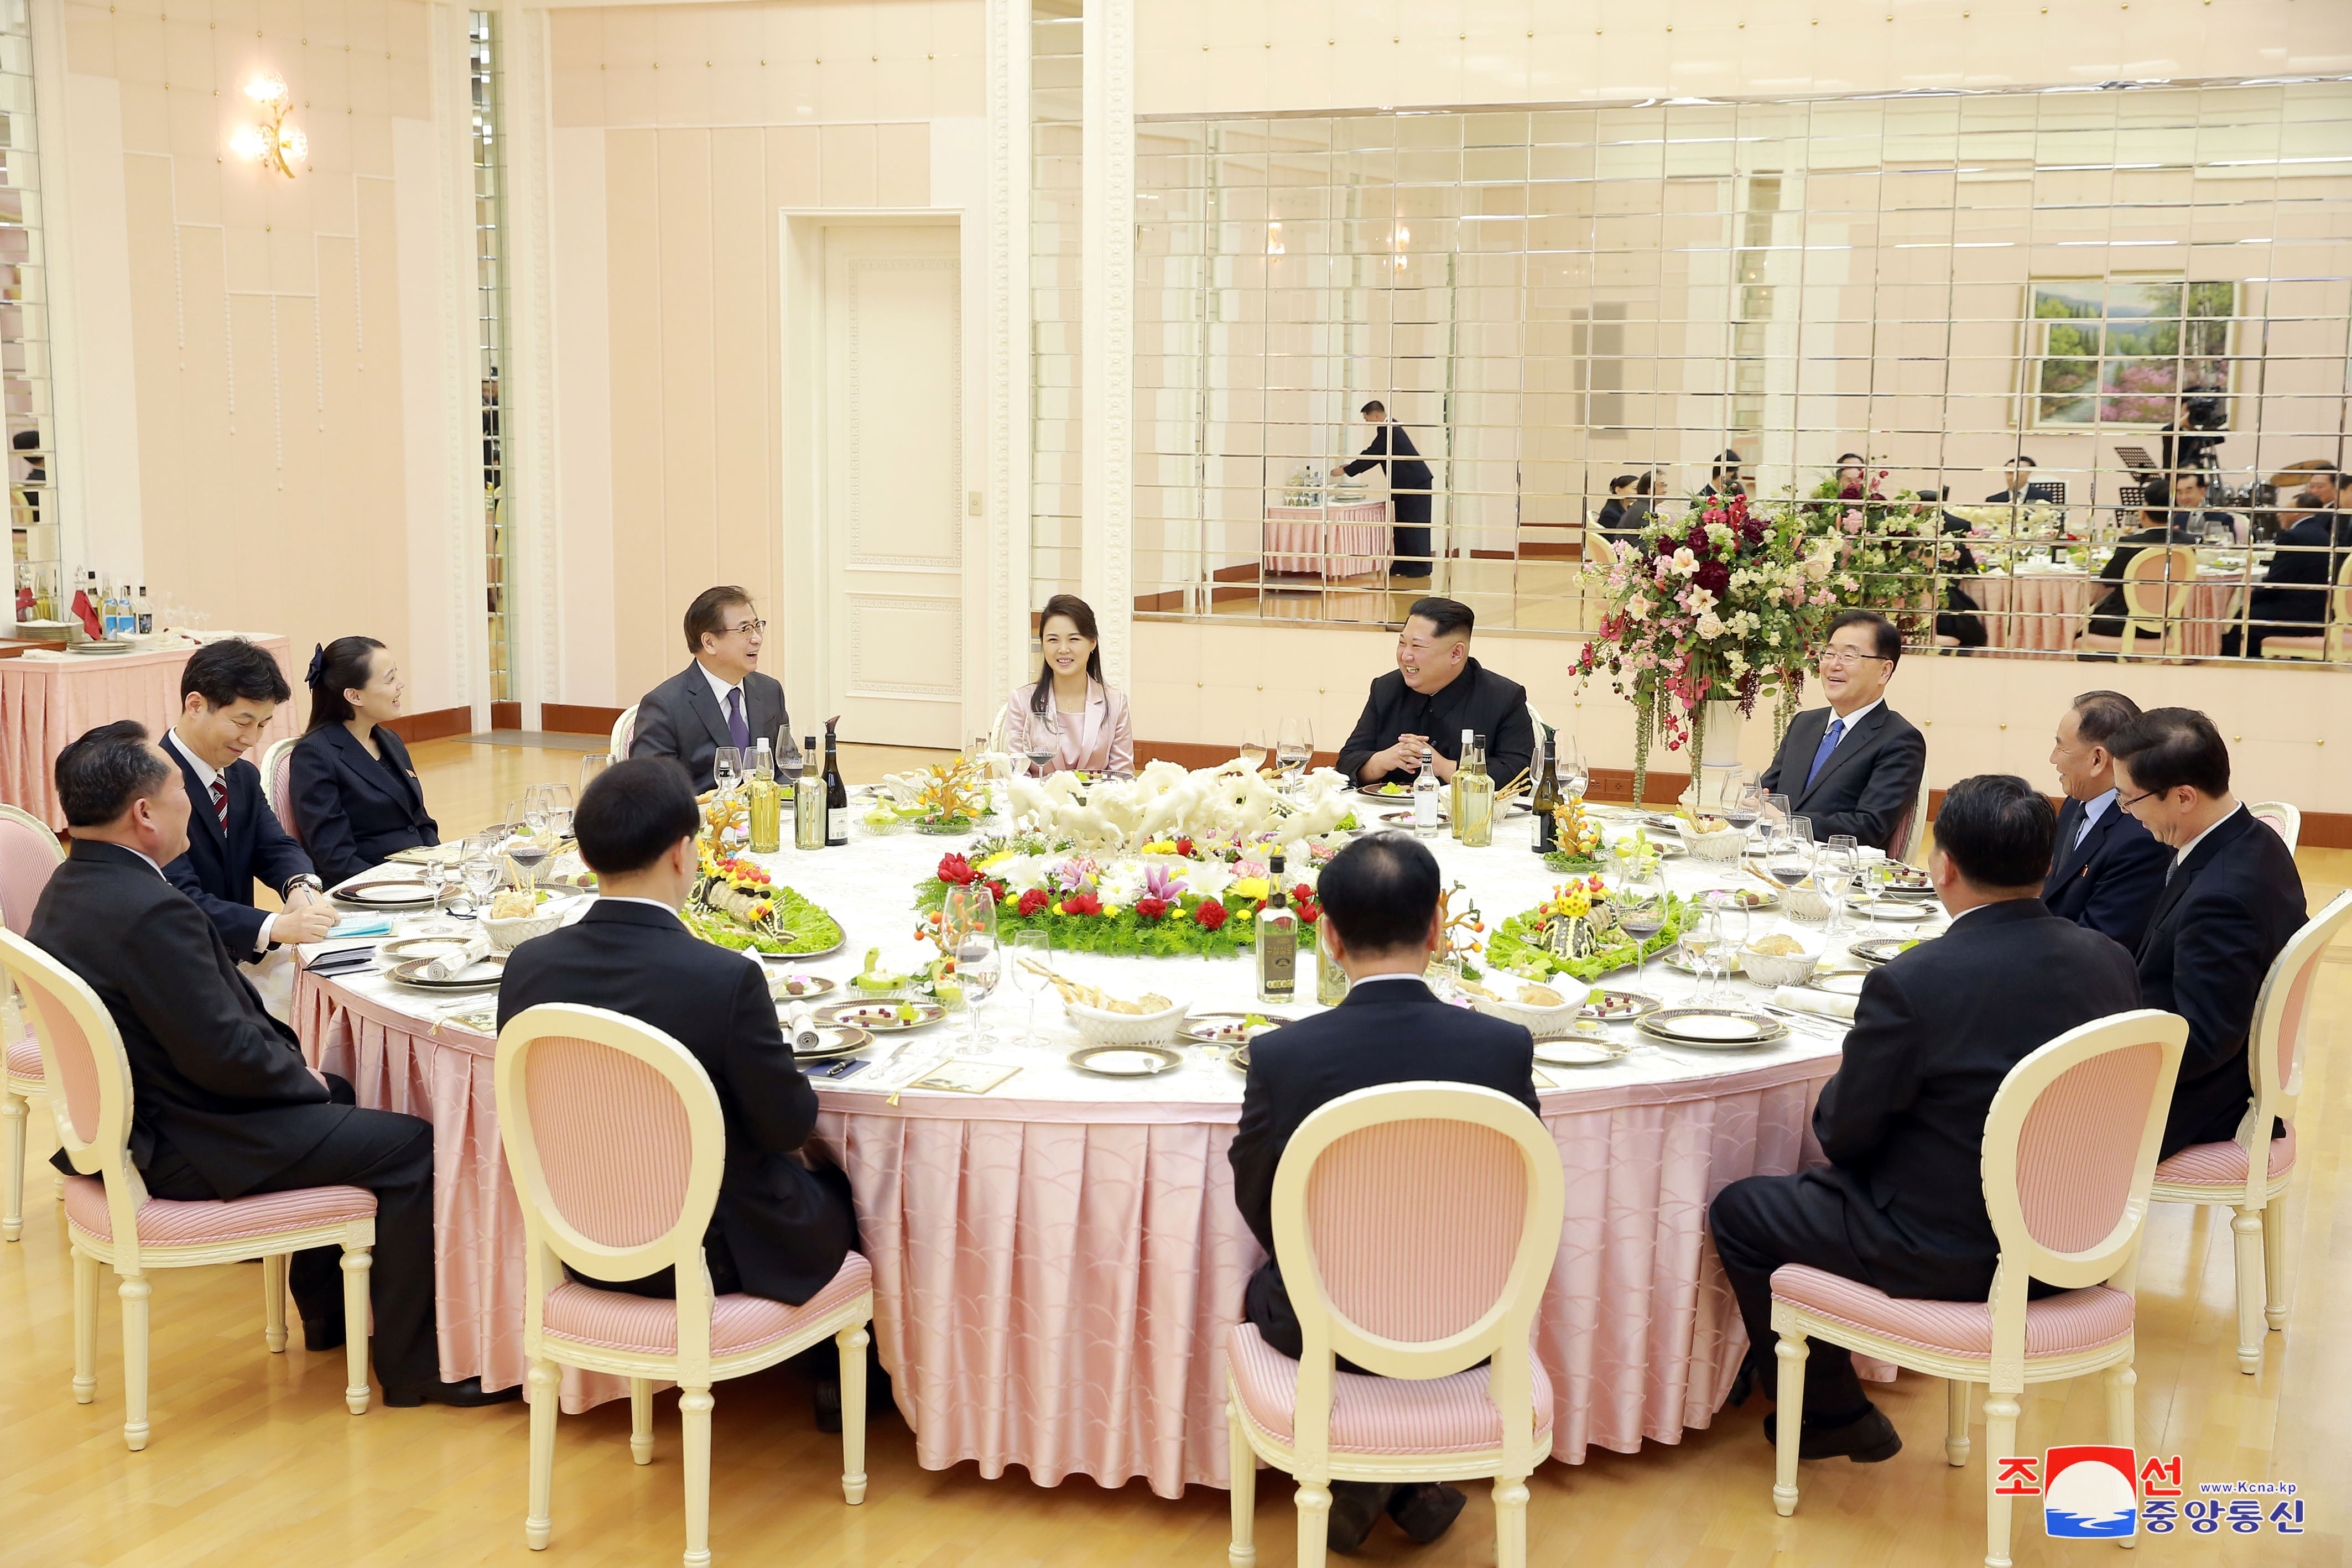 لقاء زعيم كوريا الشمالية مع وفد كوريا الجنوبية